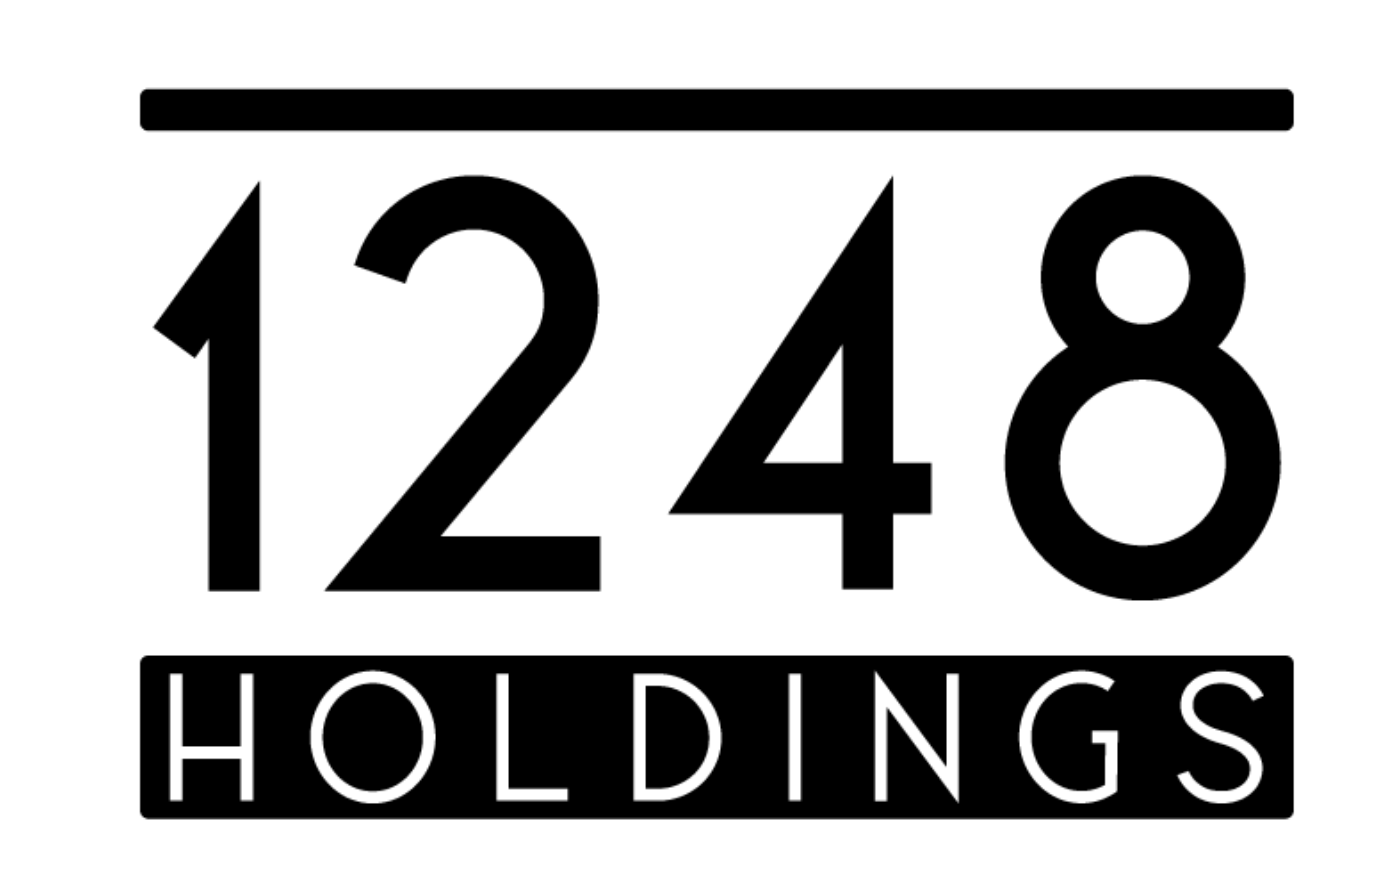 1248 Holdings logo